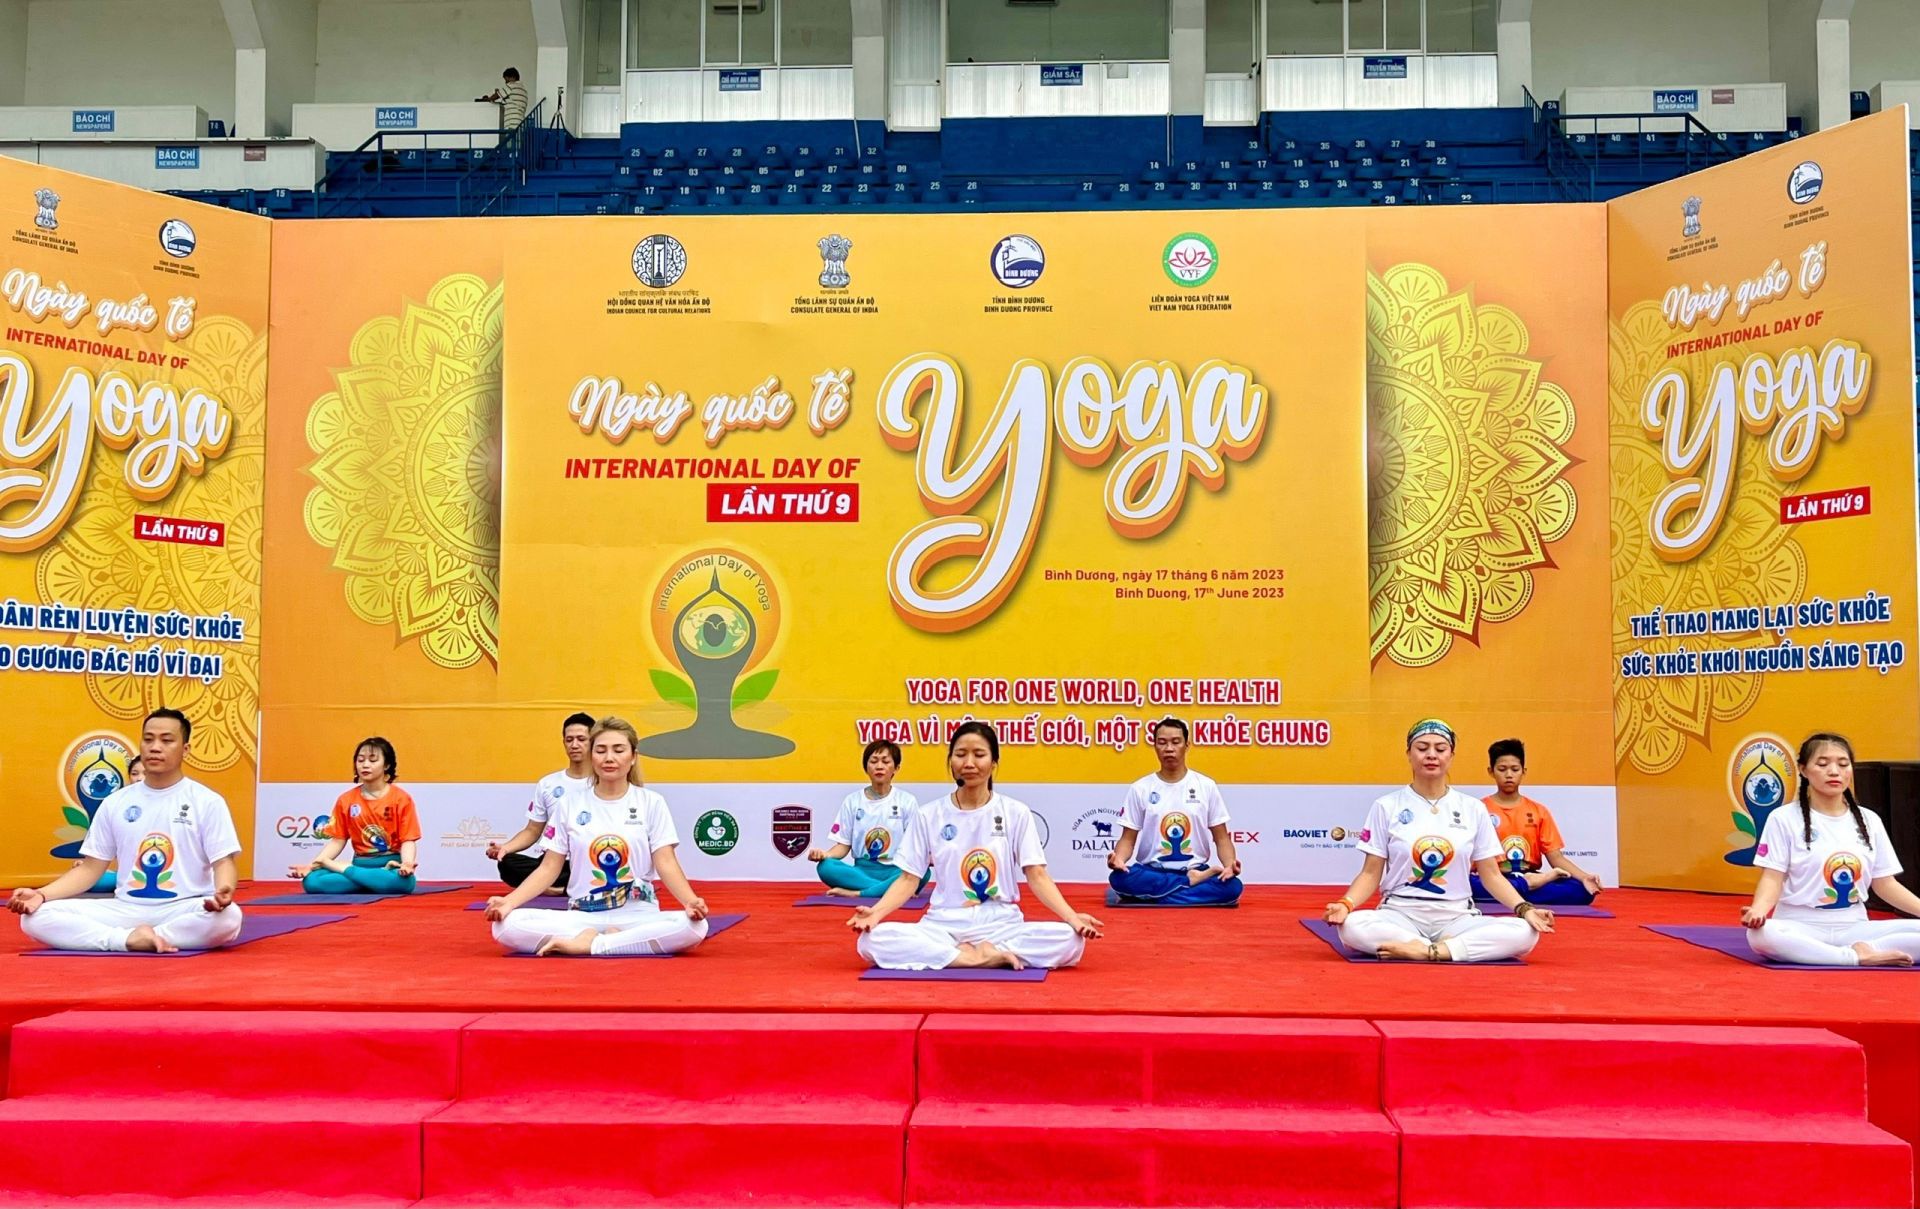 HLV Phạm Thị Hạnh thuộc Tổ chức The Art of Living đang hướng dẫn thực hành giao thức Yoga cơ bản tại ngày hội